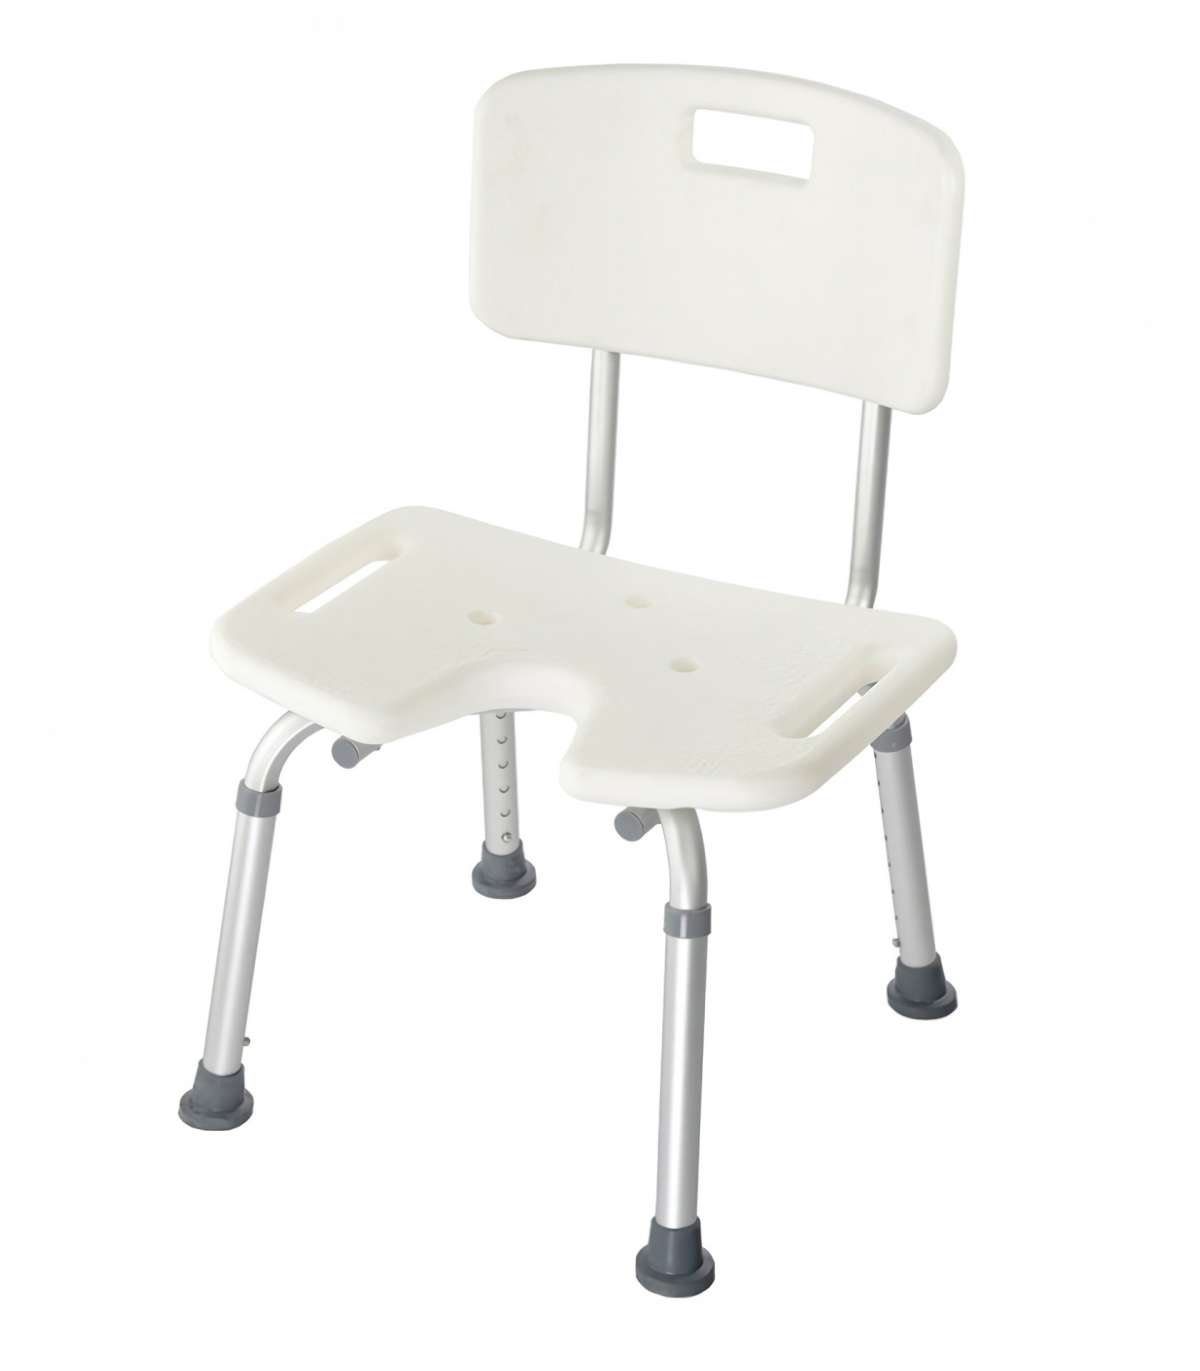 Стул для мытья в ванне. BS Bench стул для ванн/душа. Стул для ванны Barry 10502. Стул для ванн BS Seat. Стул для ванной BS Seat с гигиеническим вырезом.